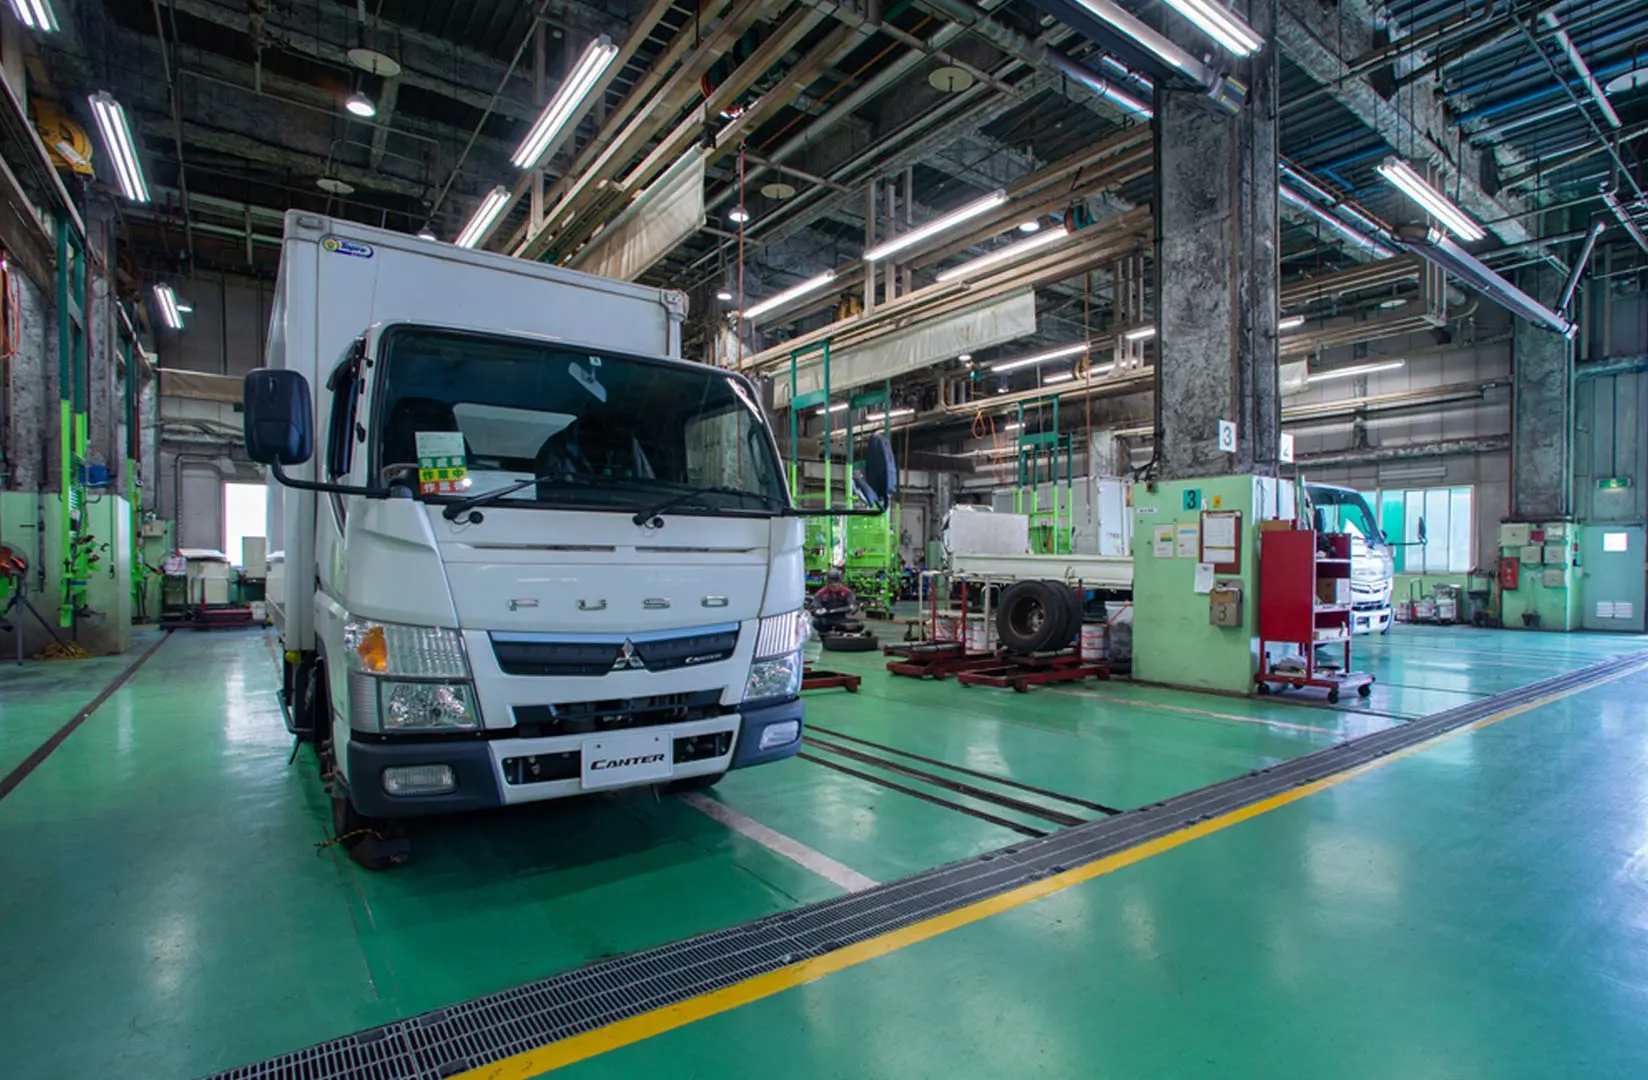 Repuestos originales para camiones de carga FUSO en Paraguay, talleres oficiales